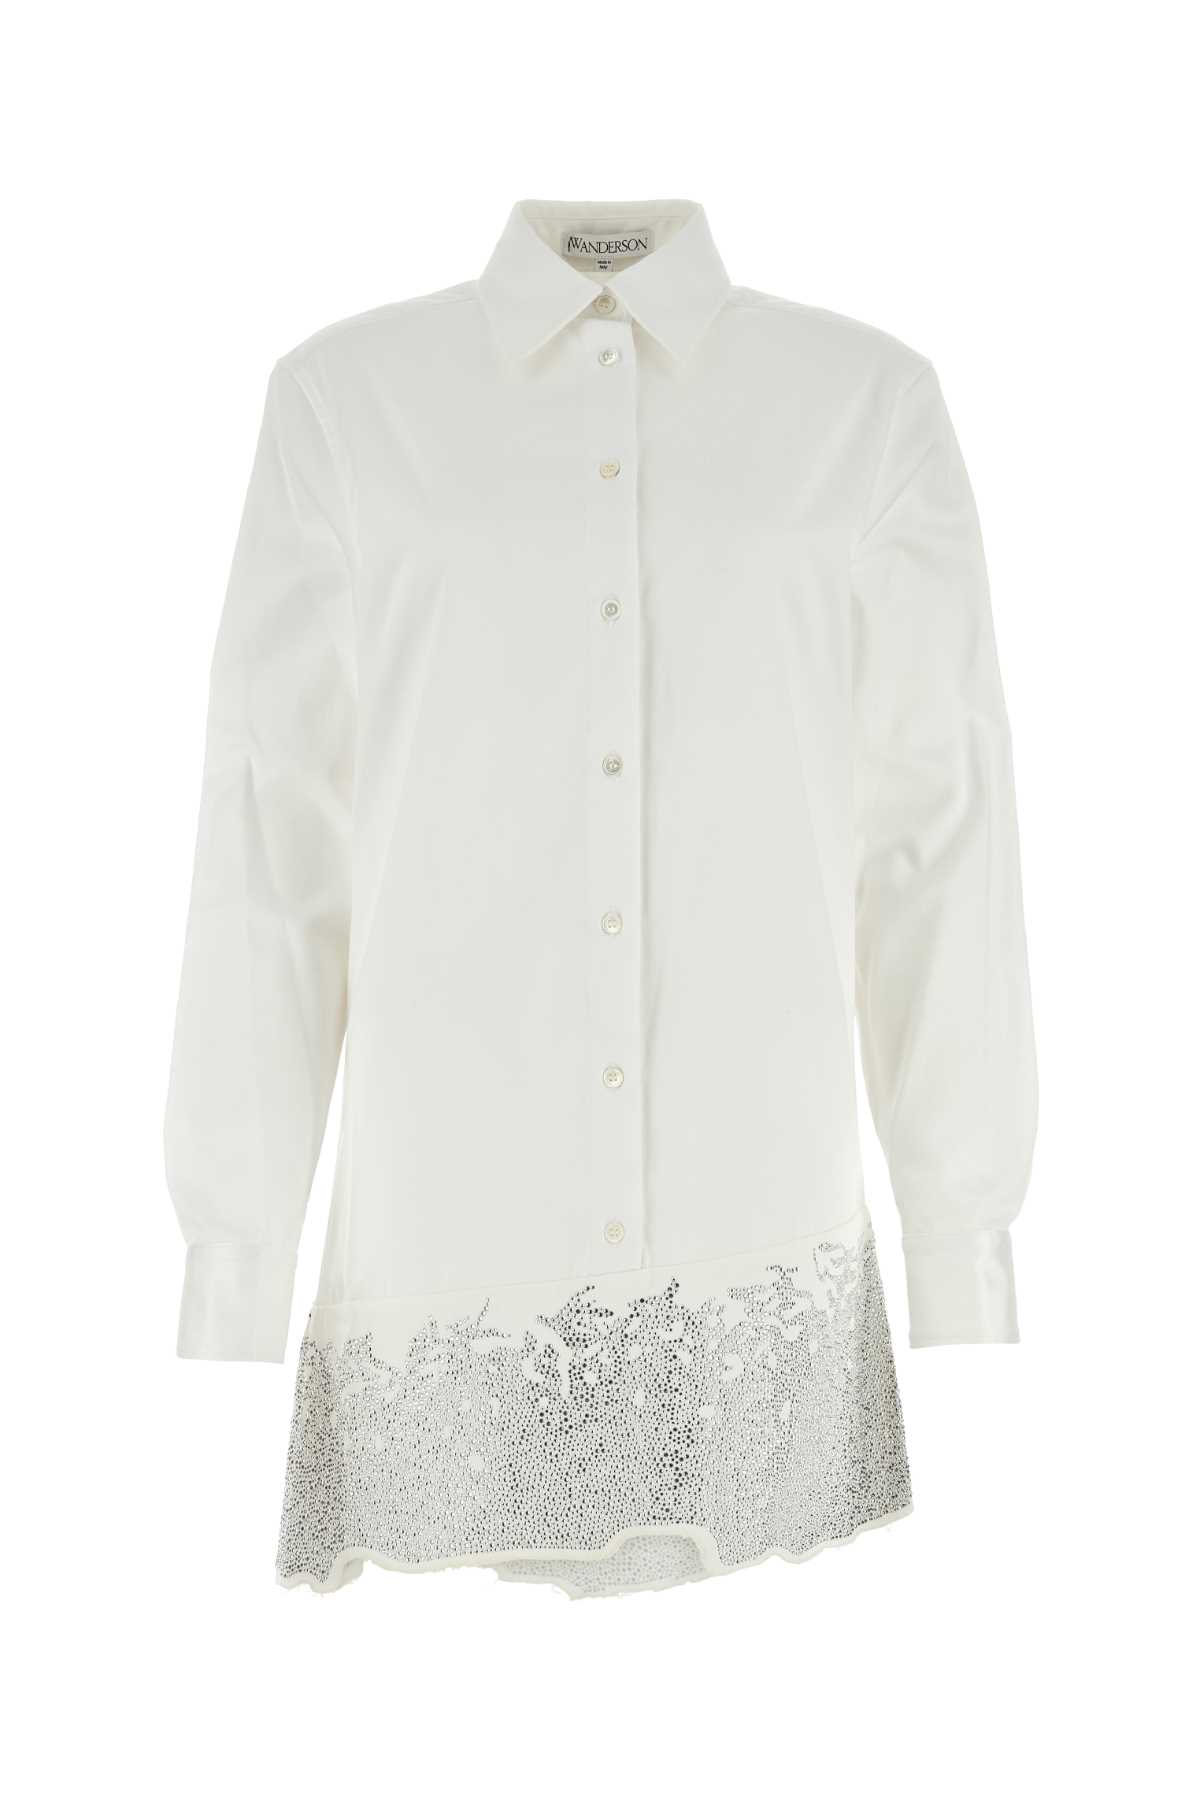 J.W. Anderson White Cotton Shirt Mini Dress